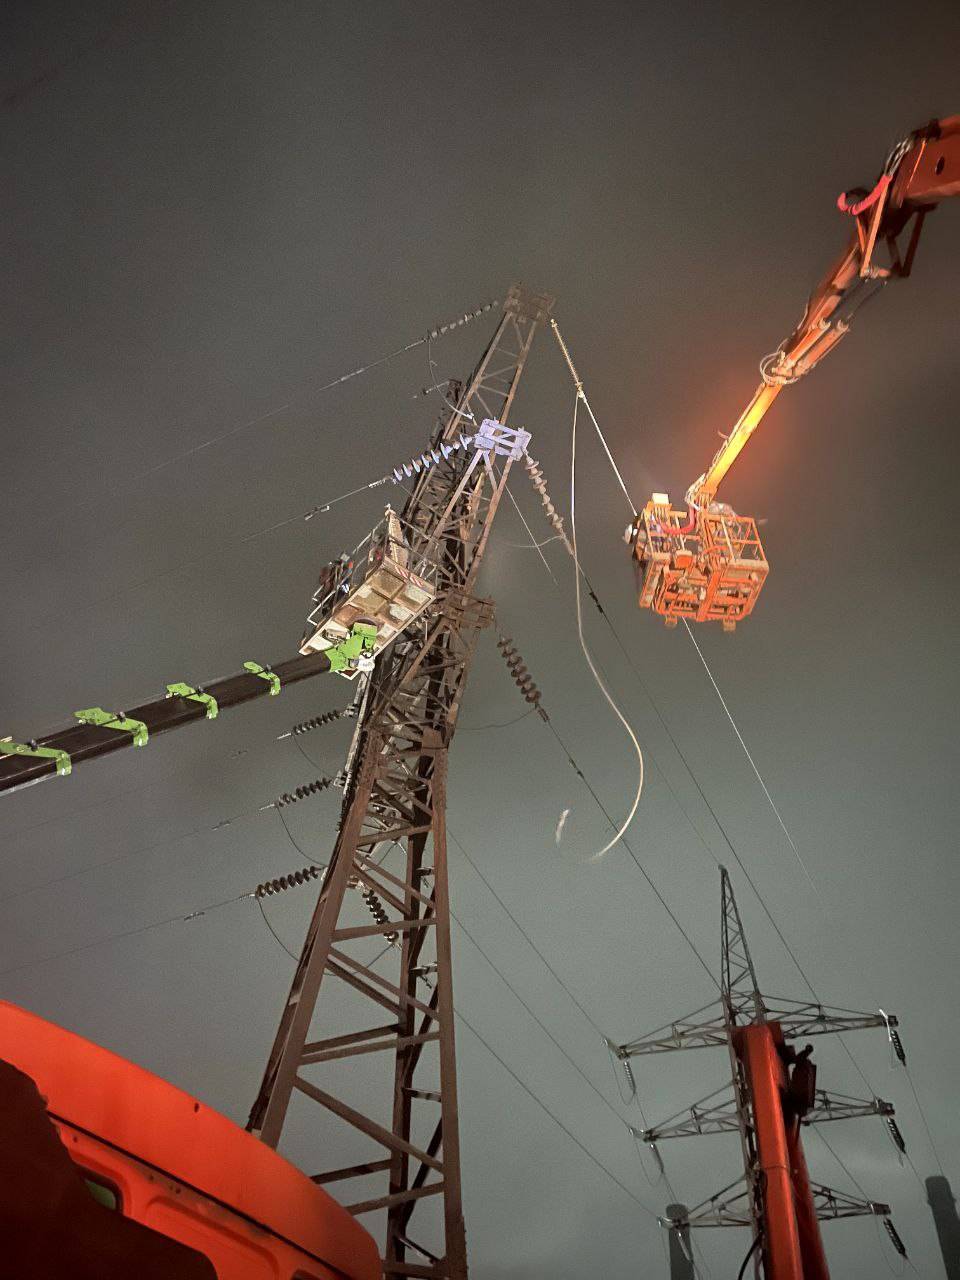 Les ingénieurs électriques de DTEK, ainsi que tous les services de secours, continuent d'éliminer les conséquences des attaques contre les installations énergétiques, que la Russie a infligées le 23 novembre. Photo: Réseaux électriques DTEK Kyiv